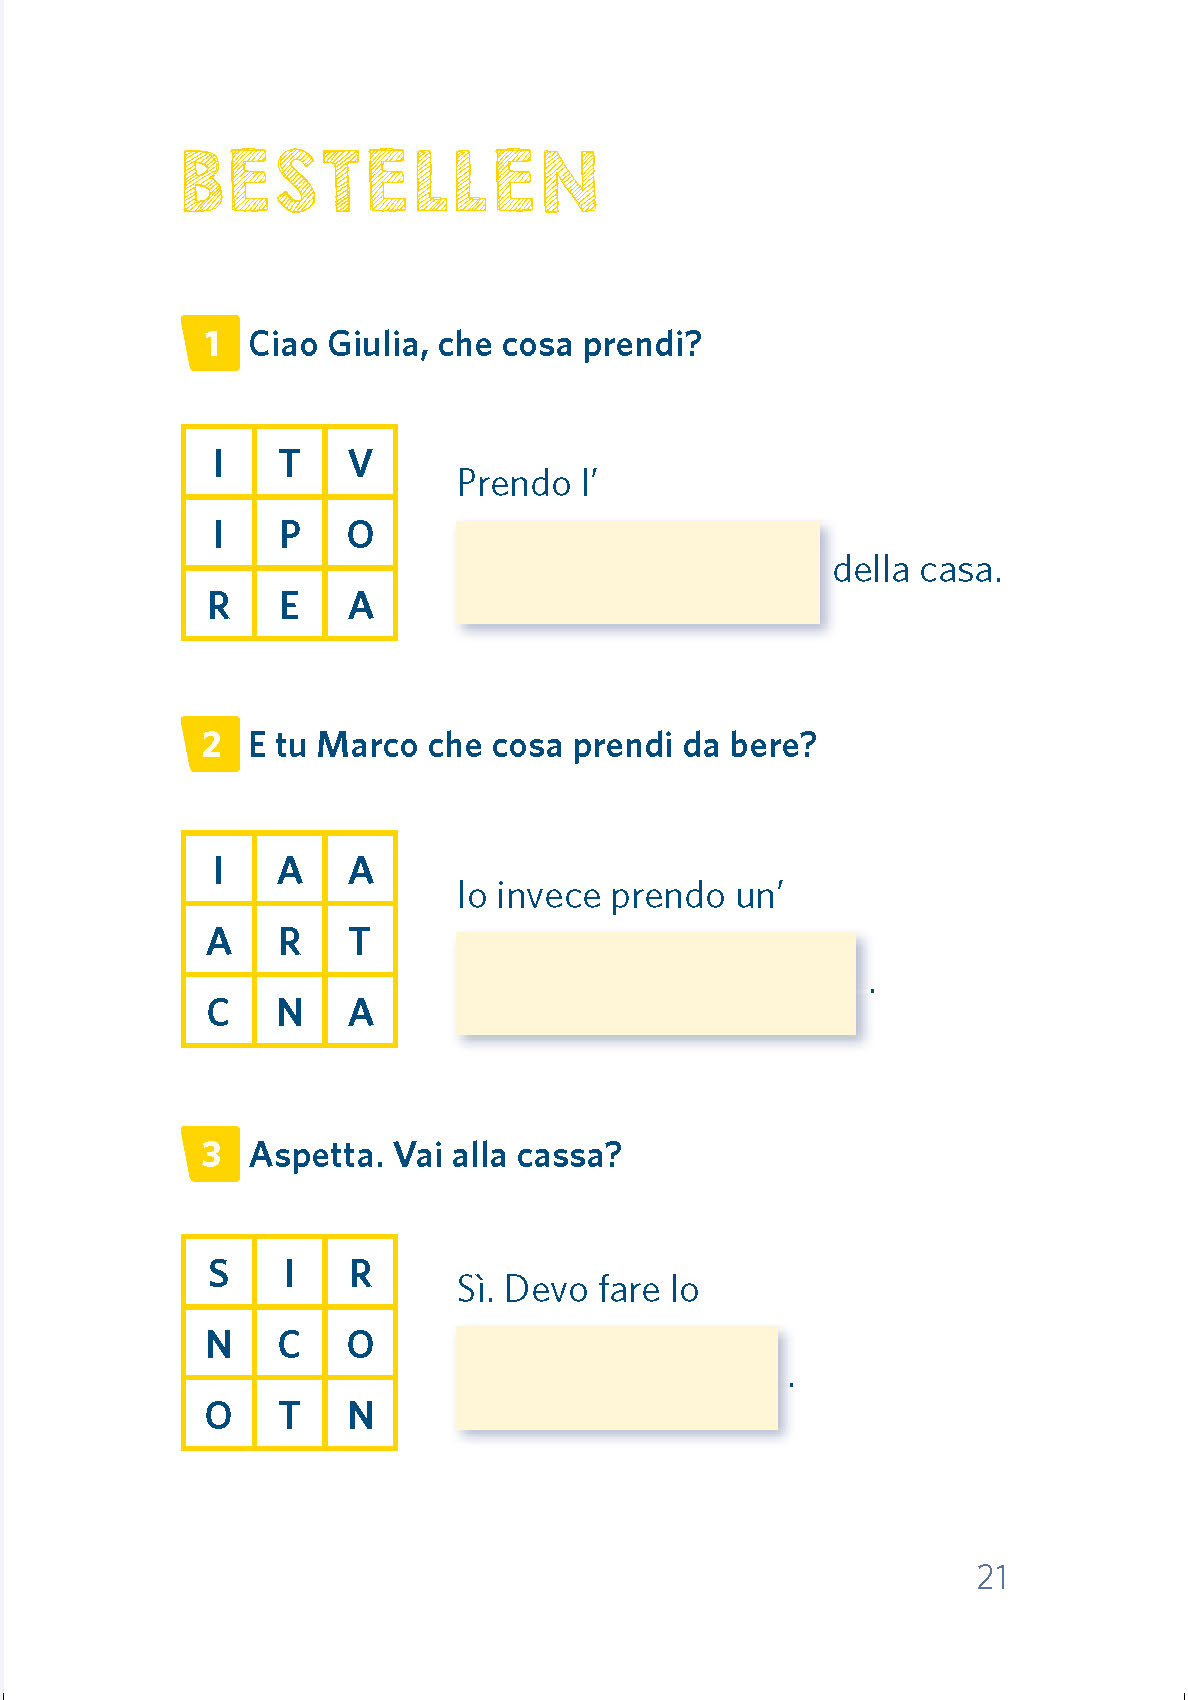 Langenscheidt Pocket-Sprachrätsel Italienisch